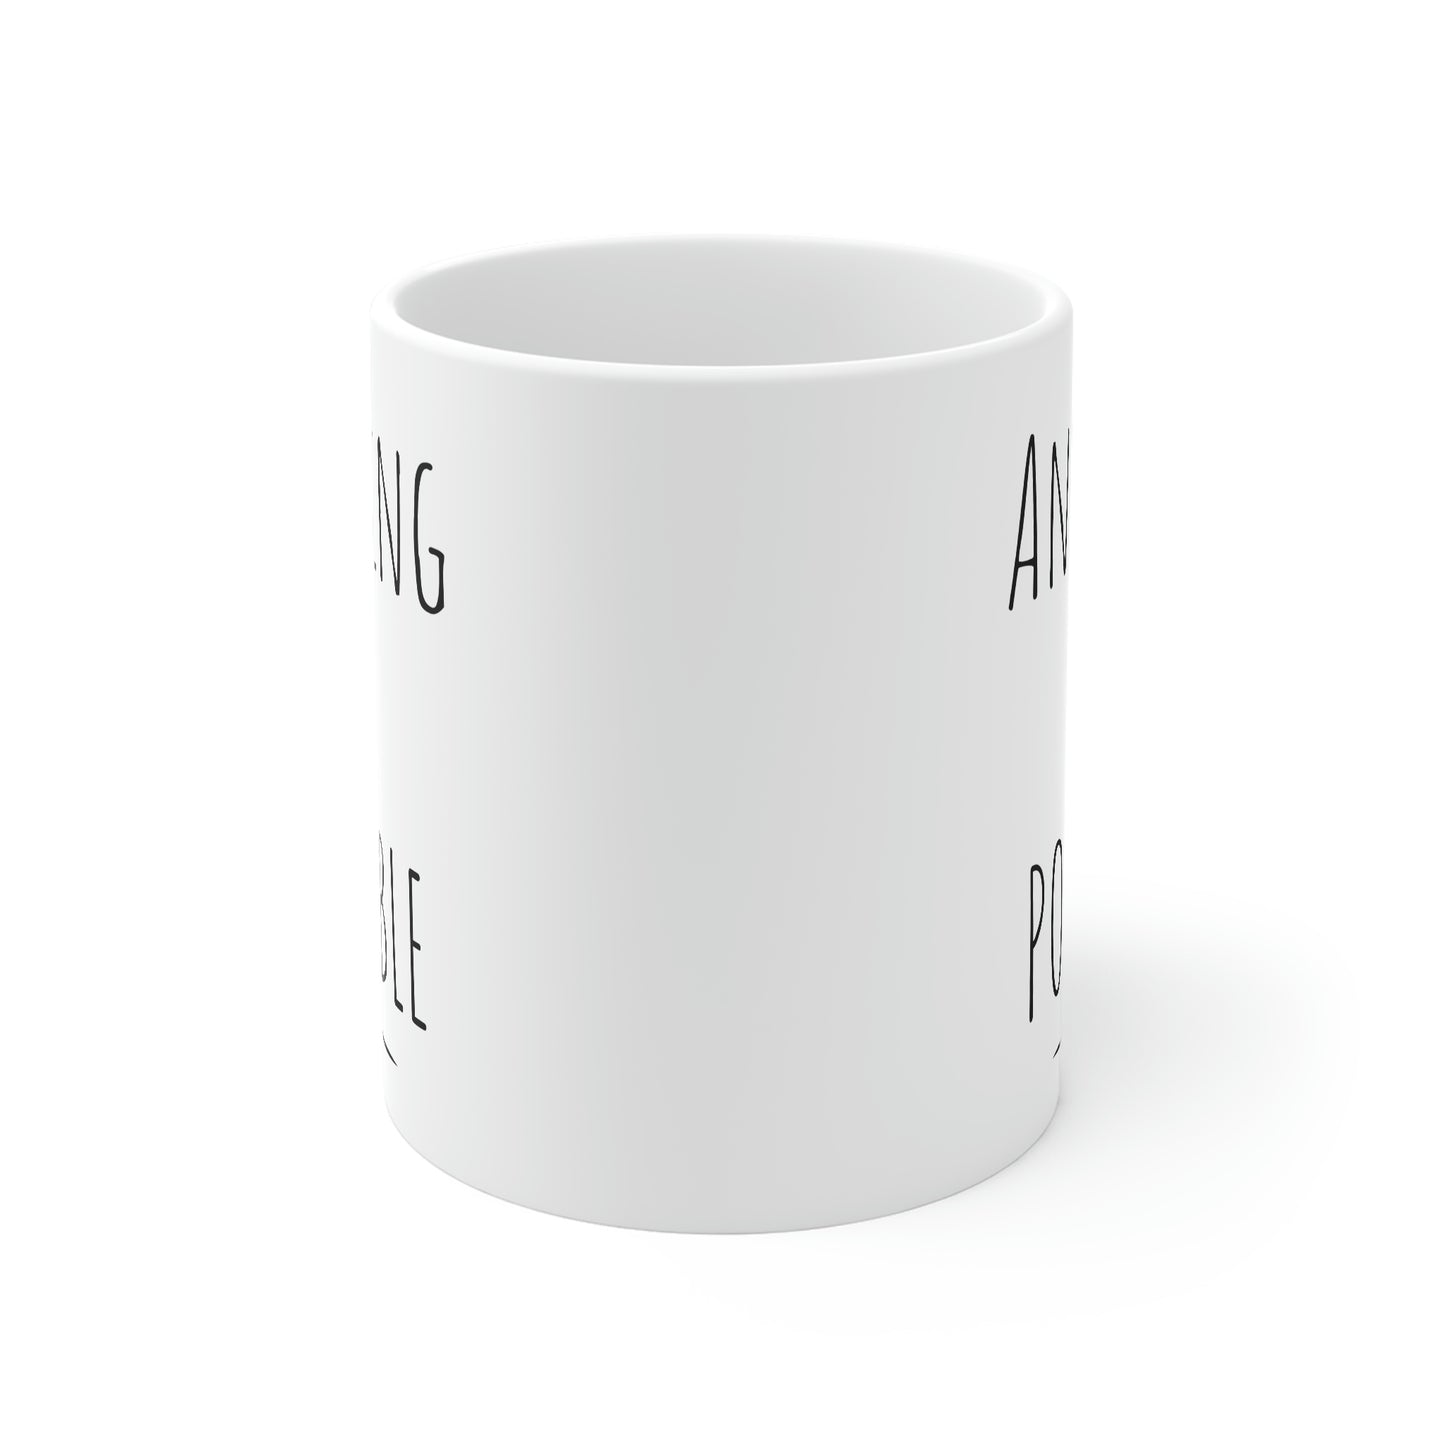 Anything Is Possible, Anything Is Possible Coffee Mug, Motivational Coffee Mugs, Inspiration Mugs